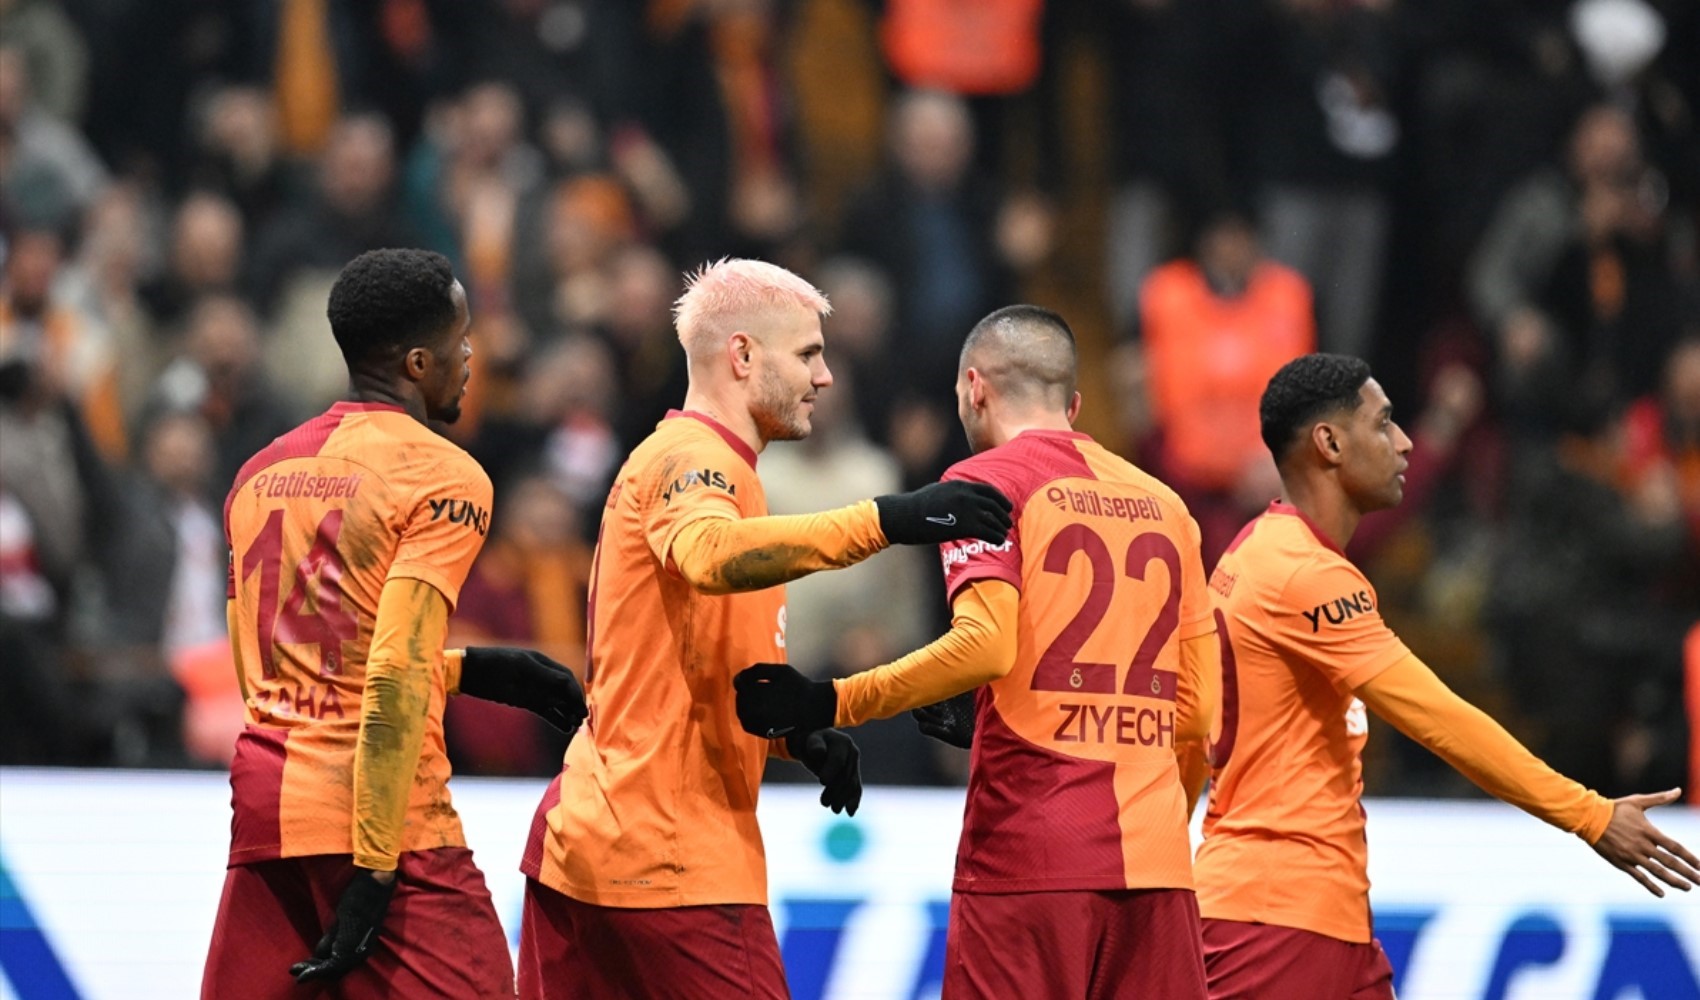 MHK'nin Galatasaray-Antalyaspor maçındaki görüşmesi sızdı!